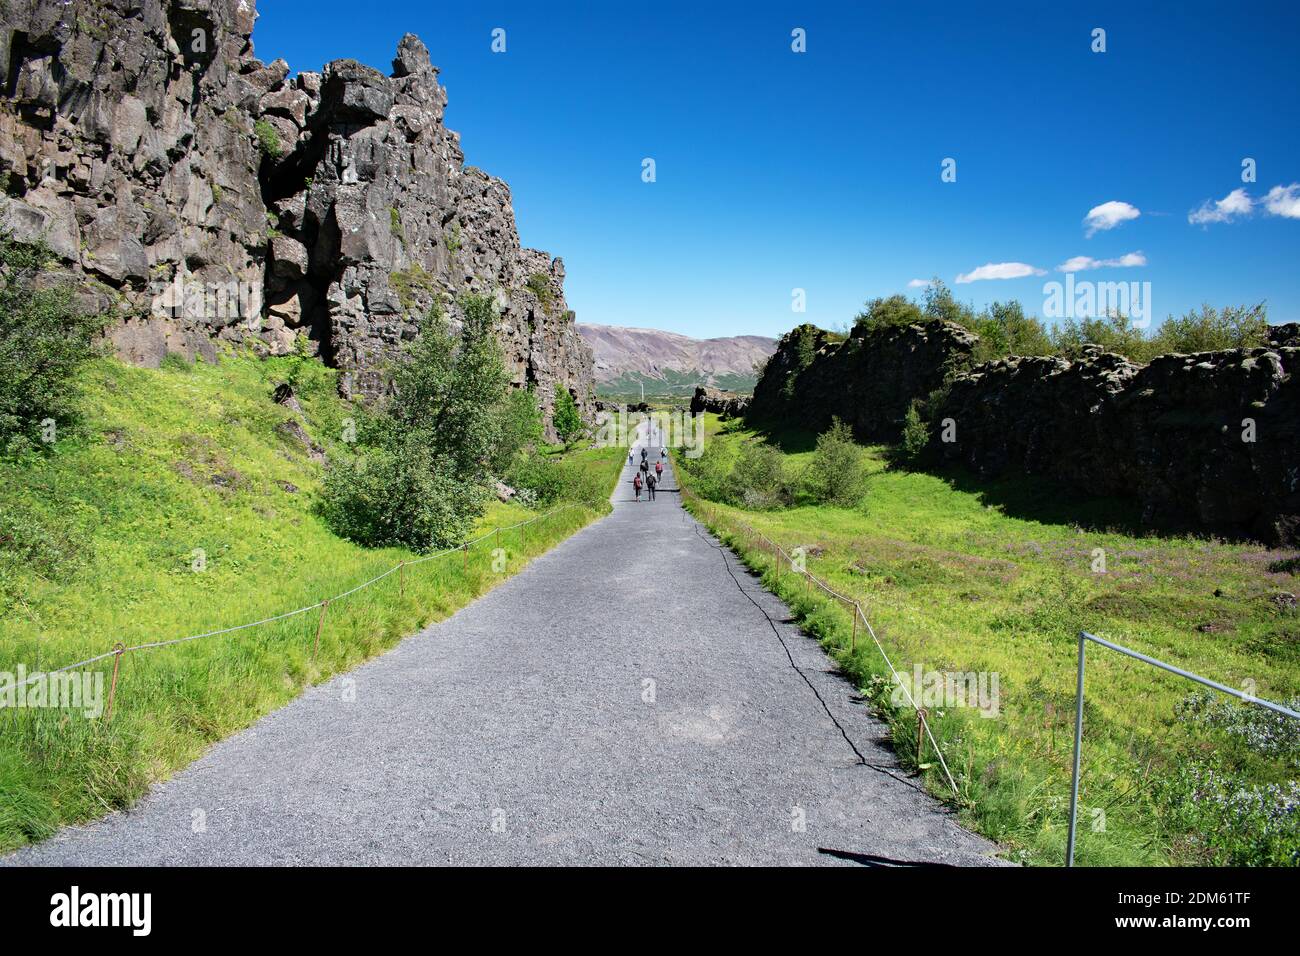 Besucher wandern auf einem Weg durch die Kontinentalscheide, Thingvellir Nationalpark, Island. Hohe Basaltfelsen, Gras und Bäume säumen den Weg. Stockfoto